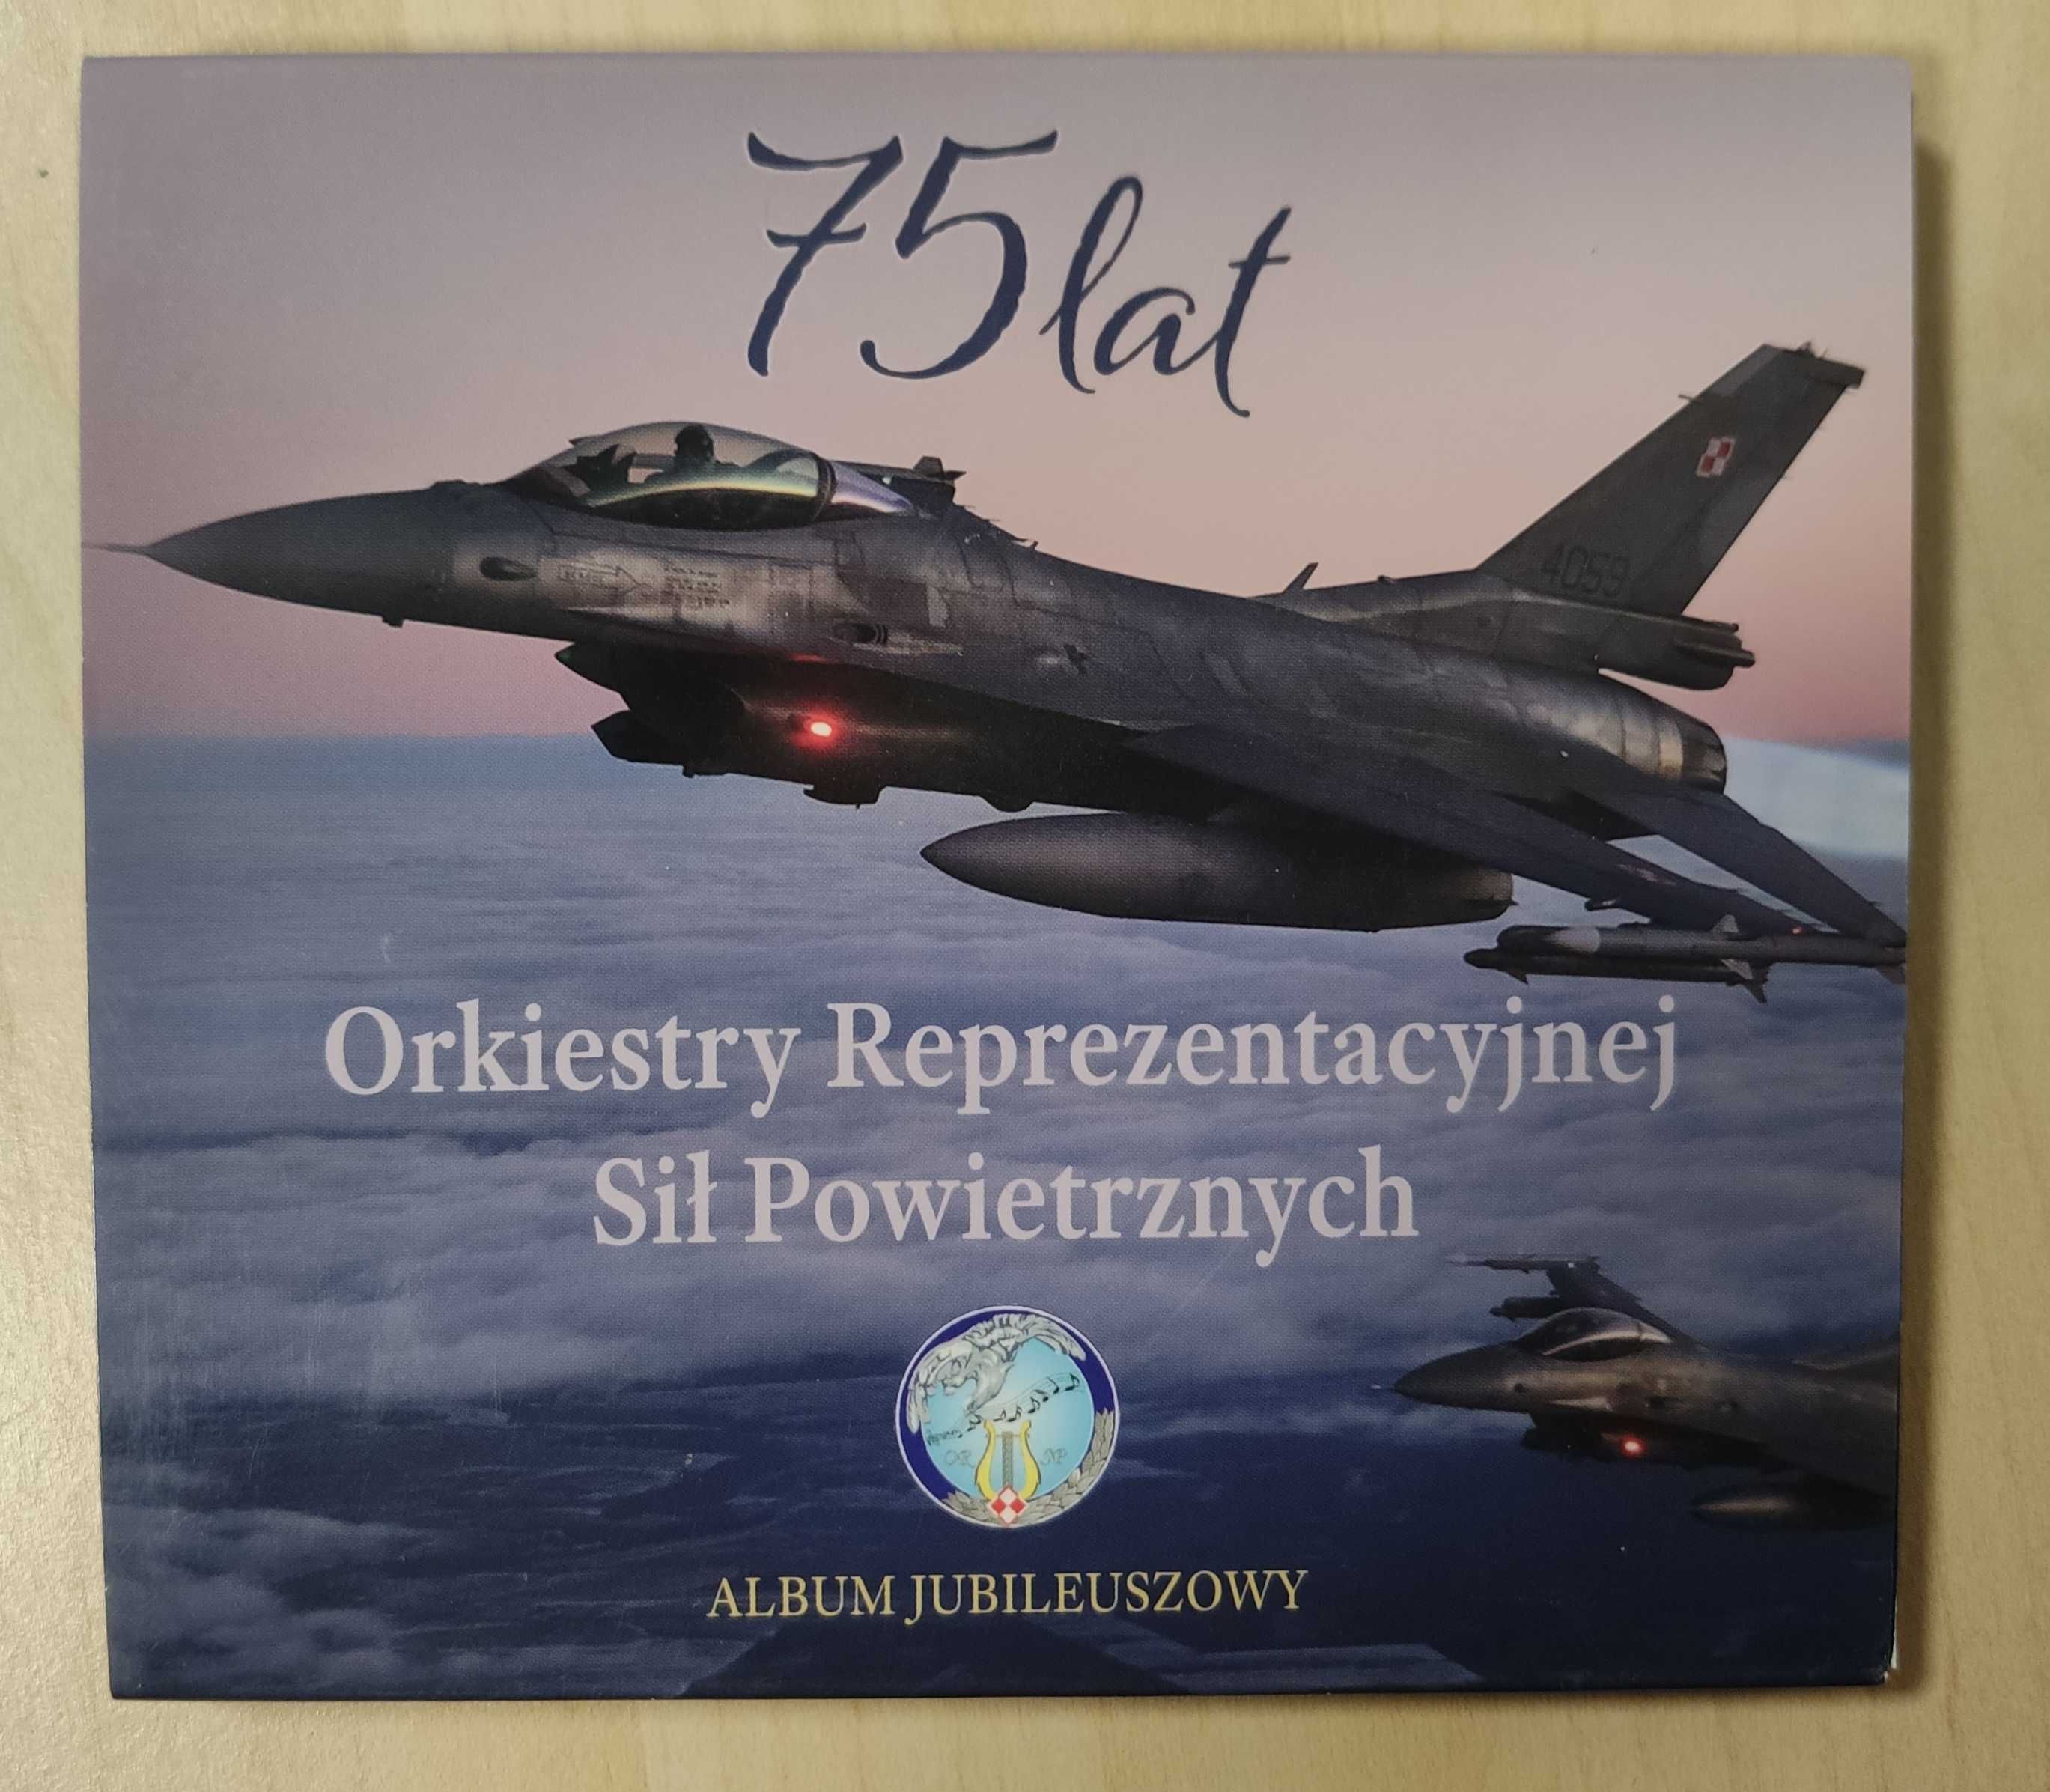 75 lat Orkiestry reprezentacyjnej Sił Powietrznych Album